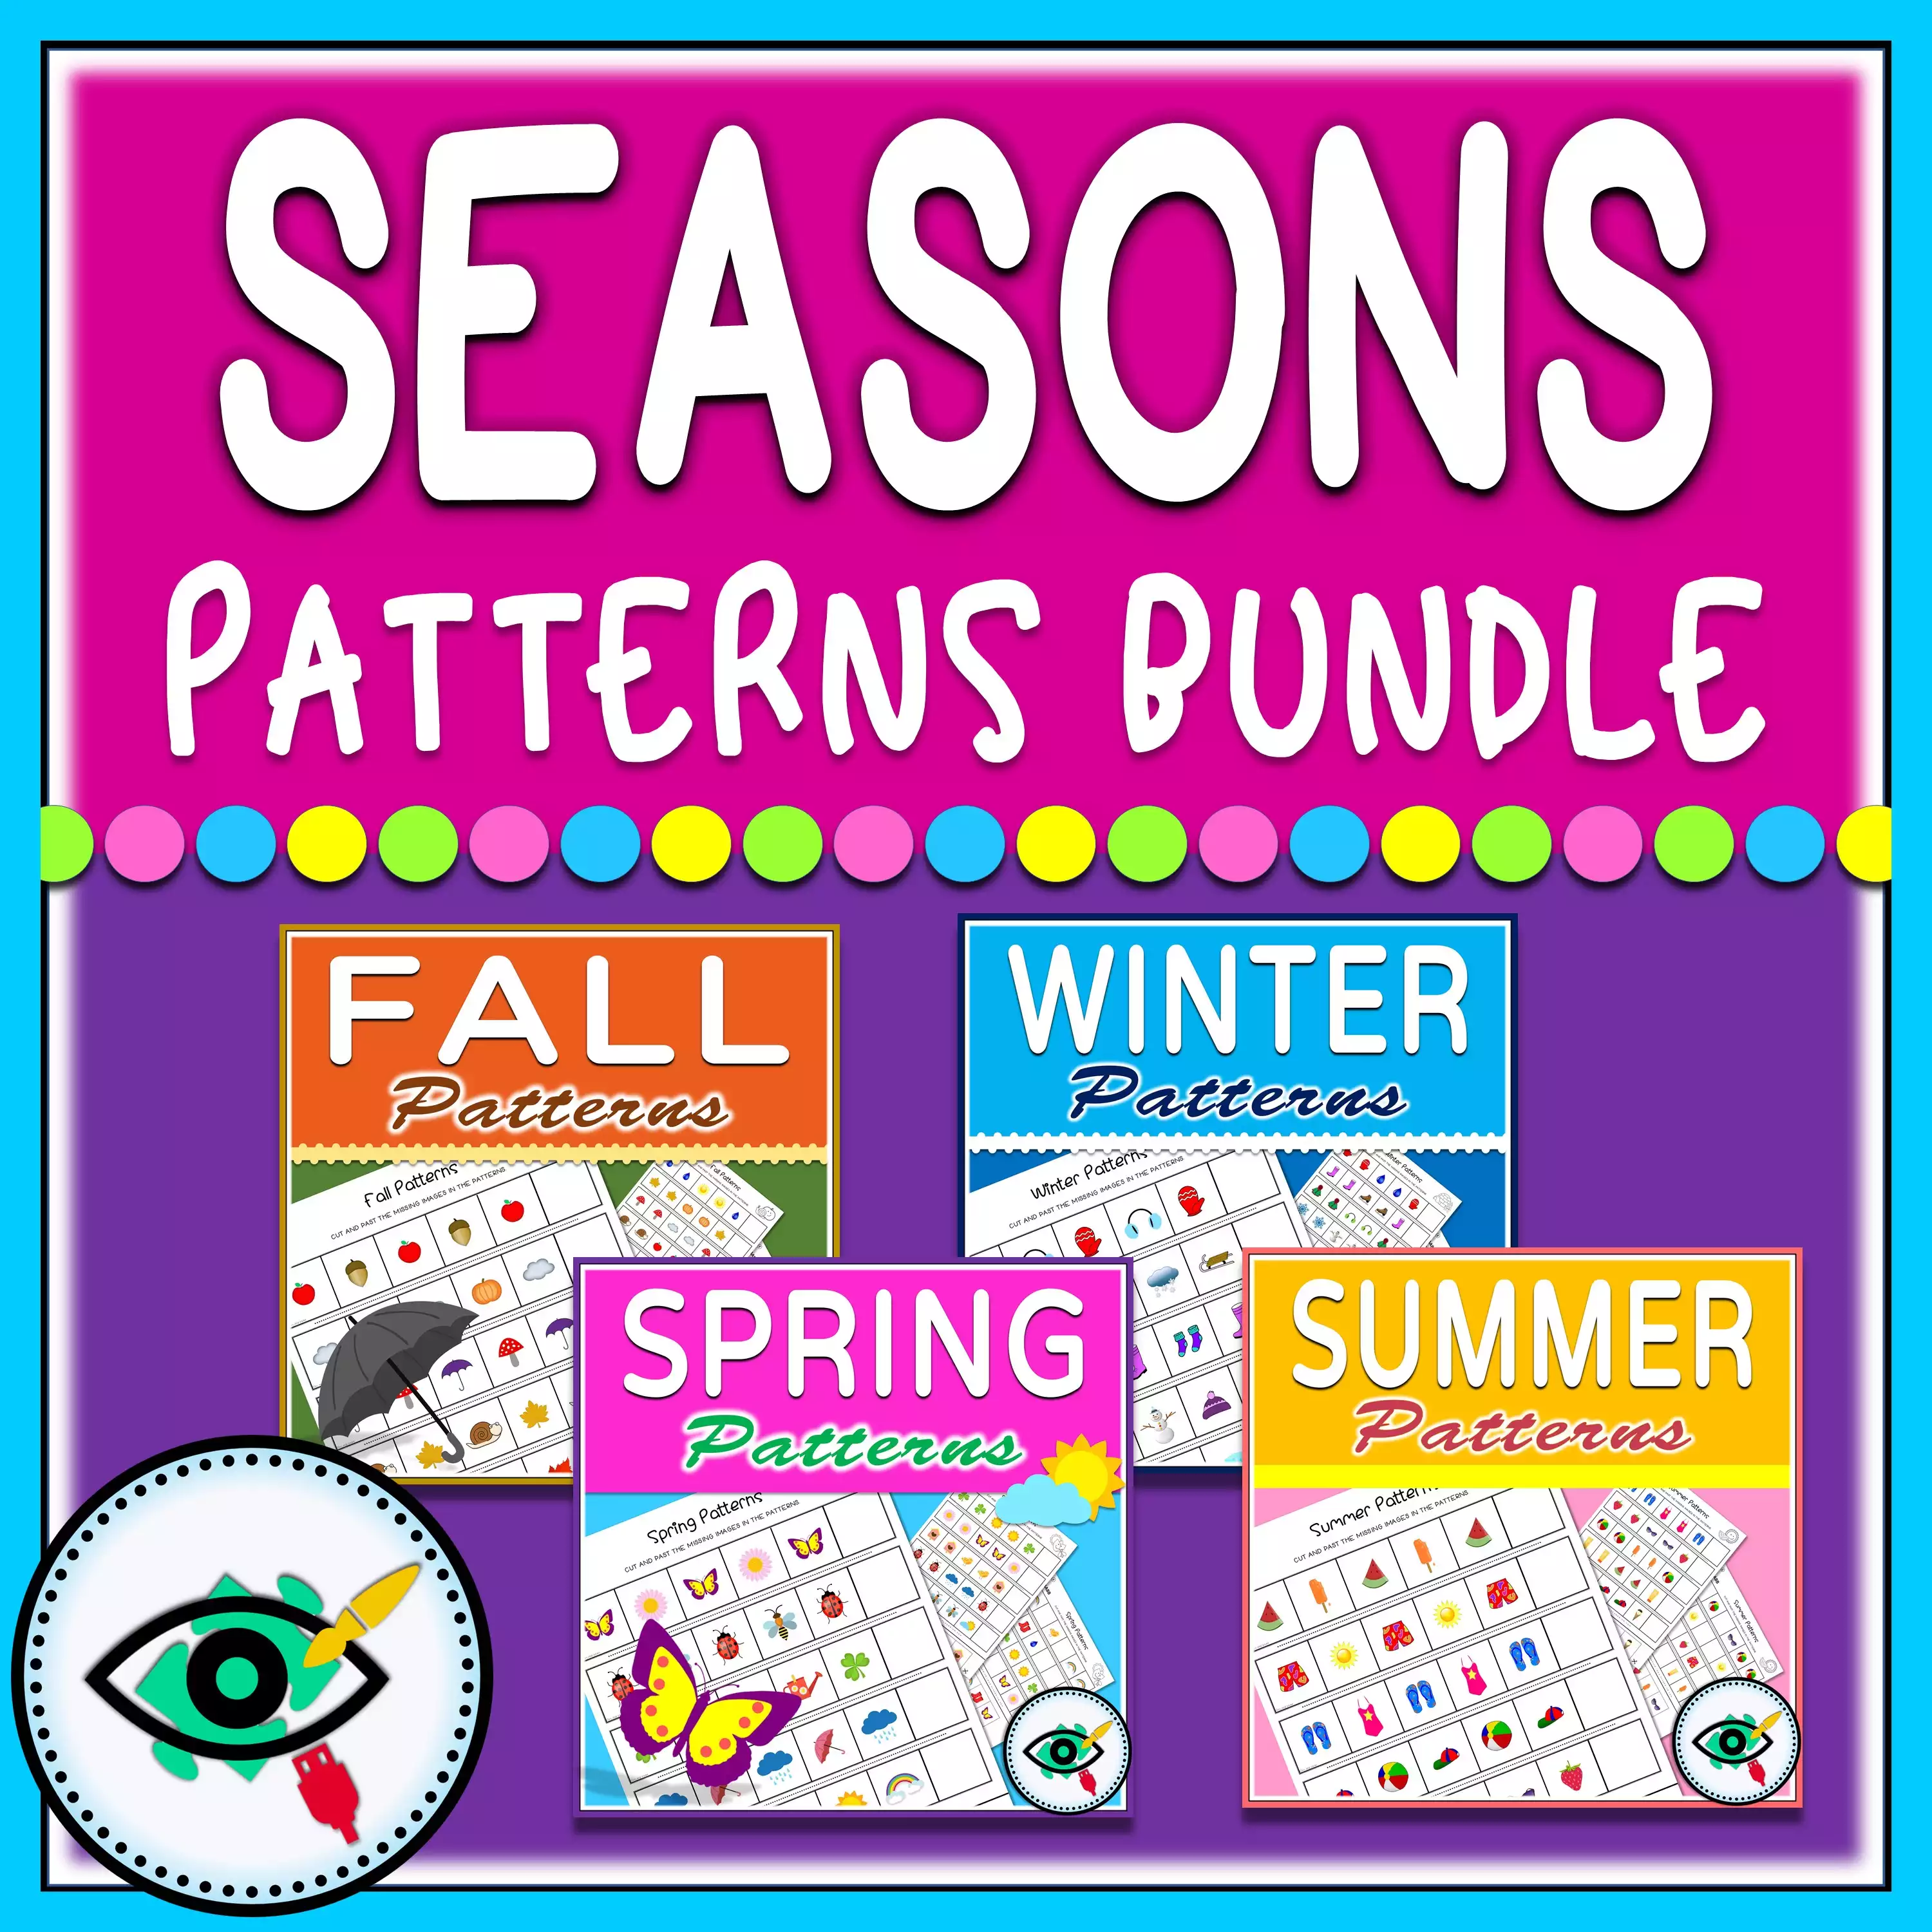 Four Seasons - Patterns Activities Bundle - Image Title